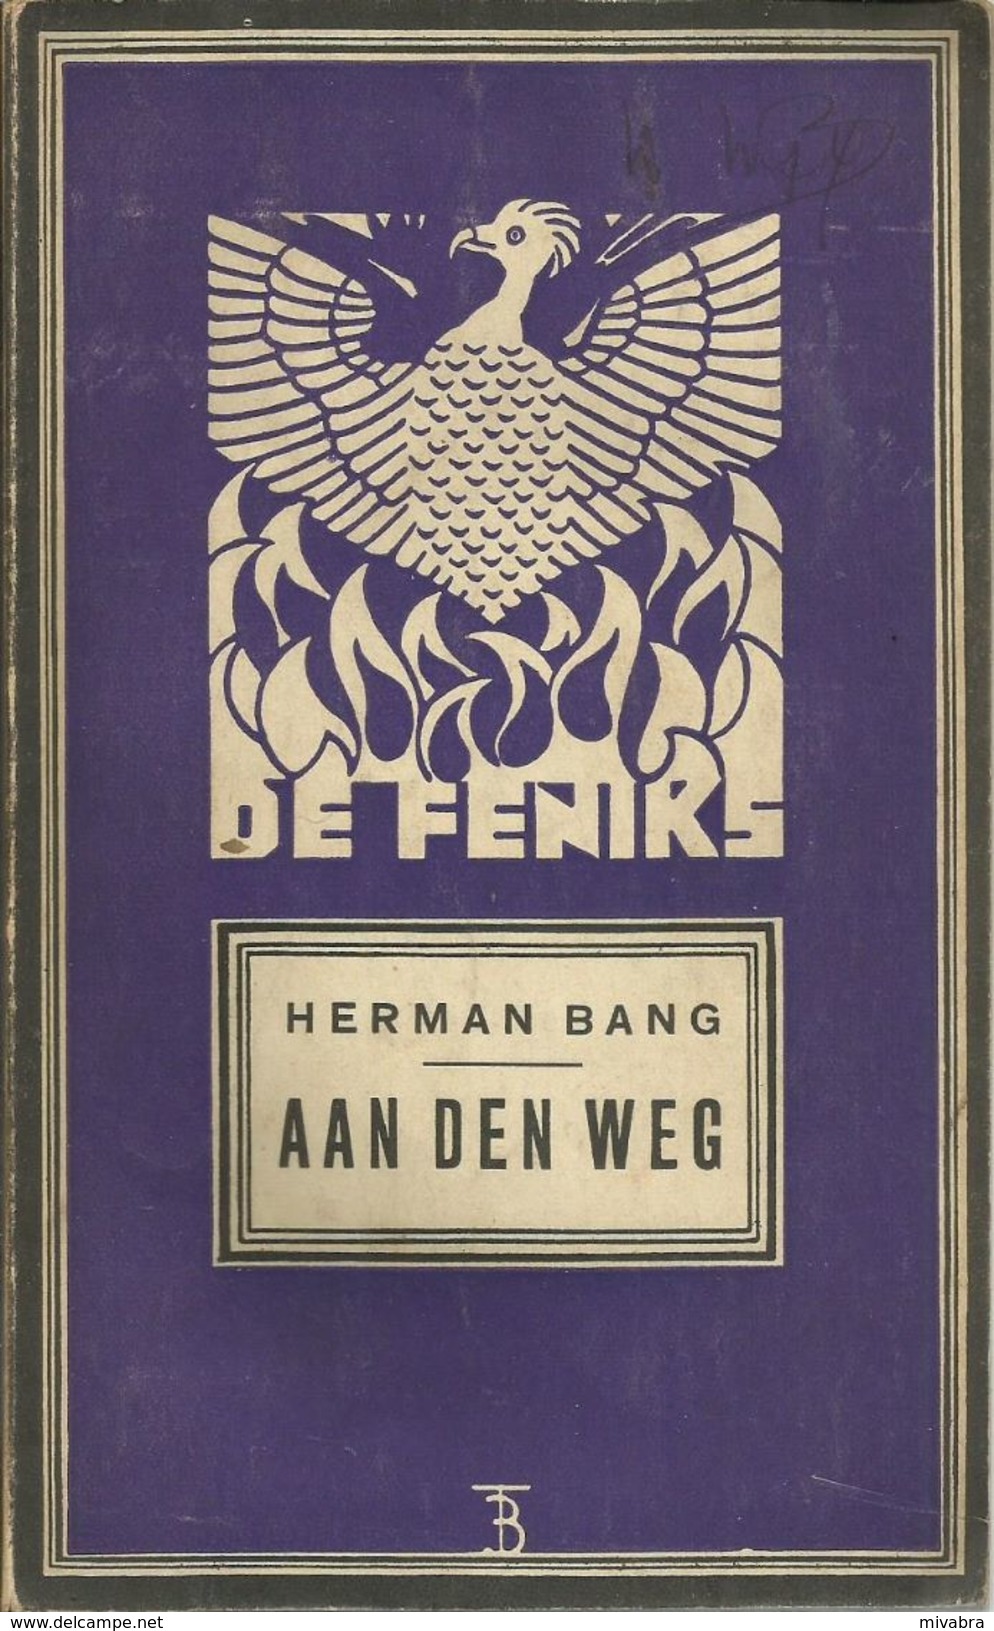 AAN DEN WEG - HERMAN BANG - REEKS DE FENIKS (6de Boek In De 9de Letterkundige Reeks) - UITGEVERIJ HET KOMPAS ANTWERPEN - Antique